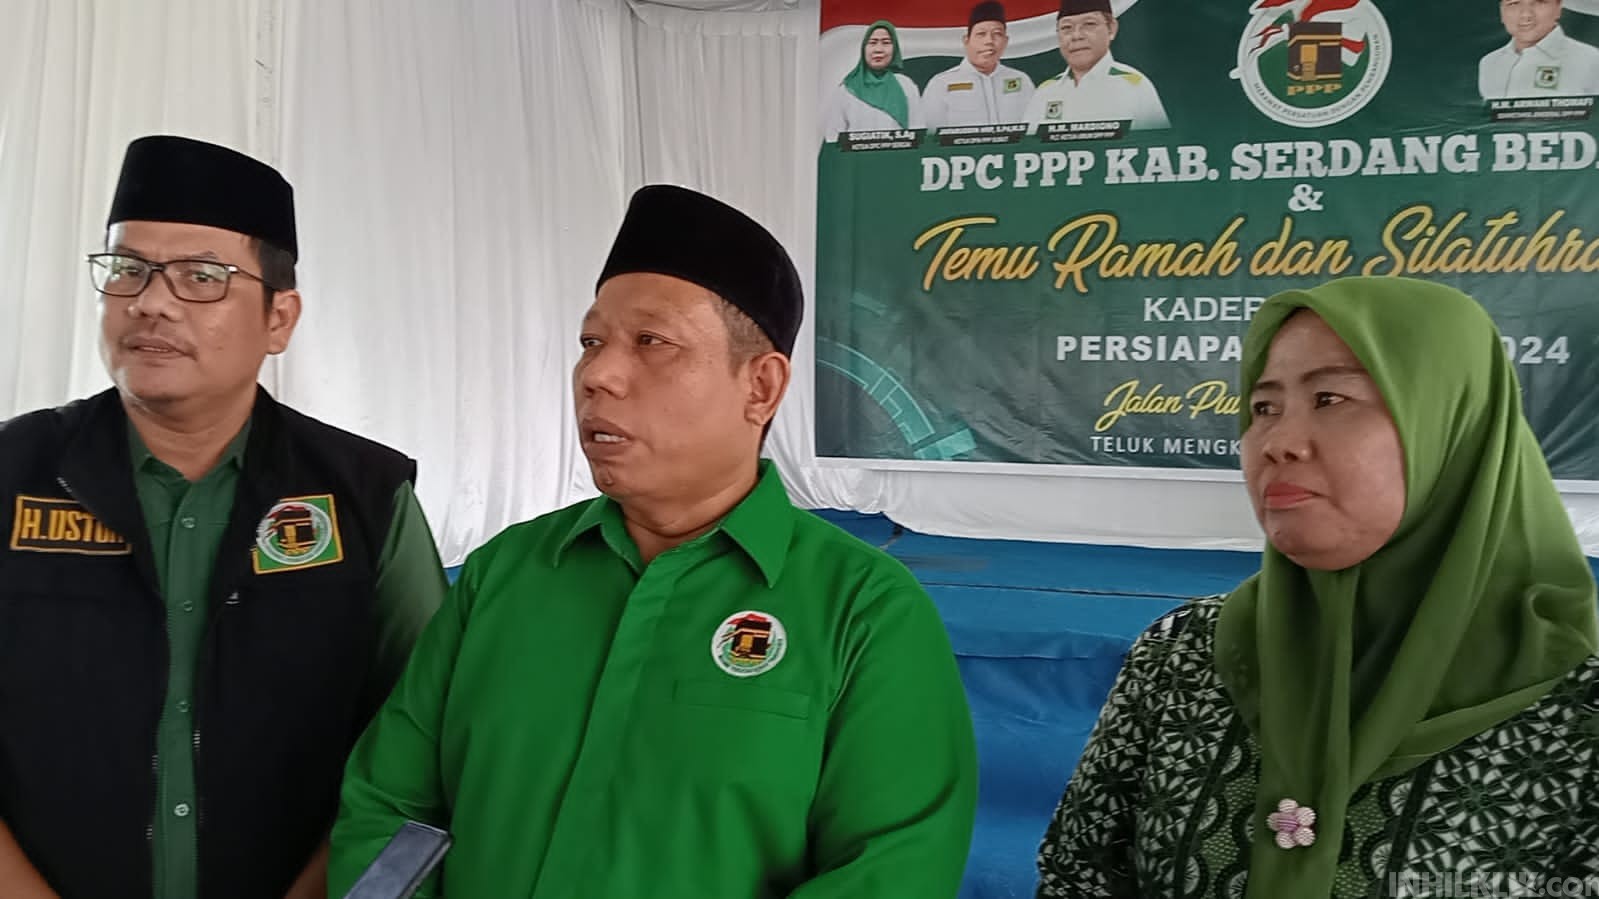 Ketua DPW PPP Sumut Jafaruddin Harahap Temu Ramah dan Silaturahmi di Kecamatan Teluk Mengkudu